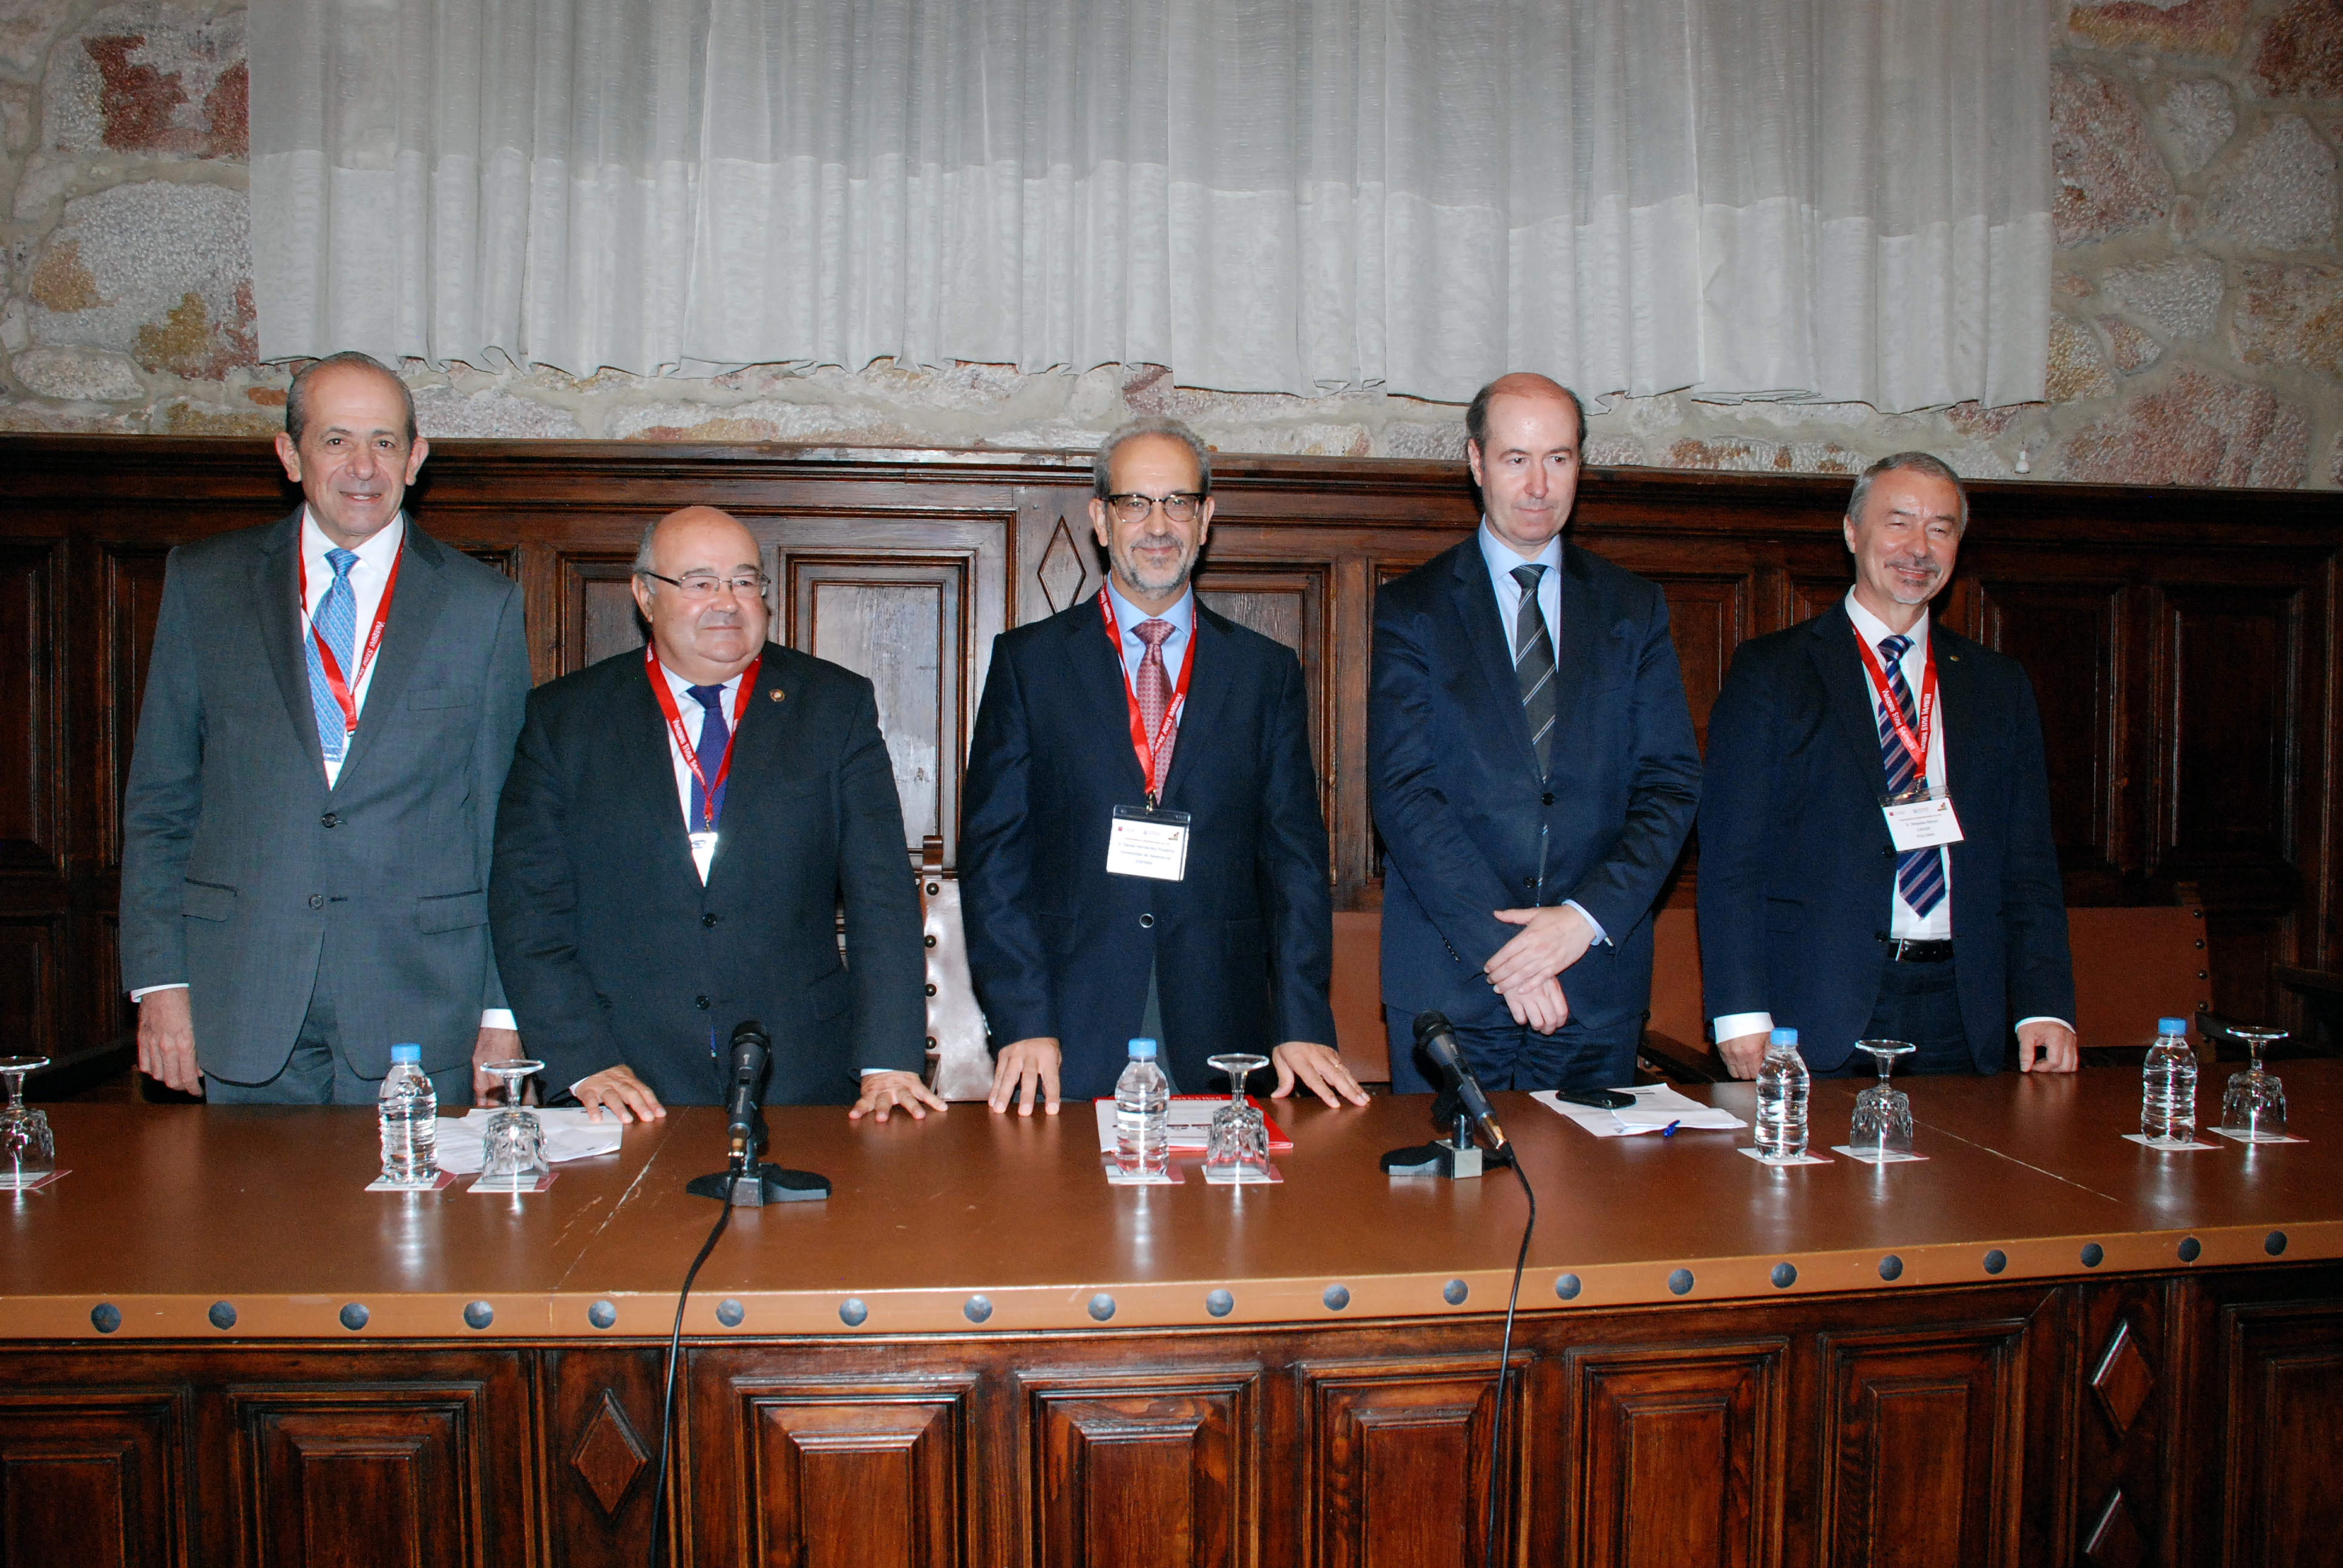 La Universidad de Salamanca acoge la I Cumbre de Presidentes de Consejos de Rectores de la Unión Europea, América Latina y el Caribe